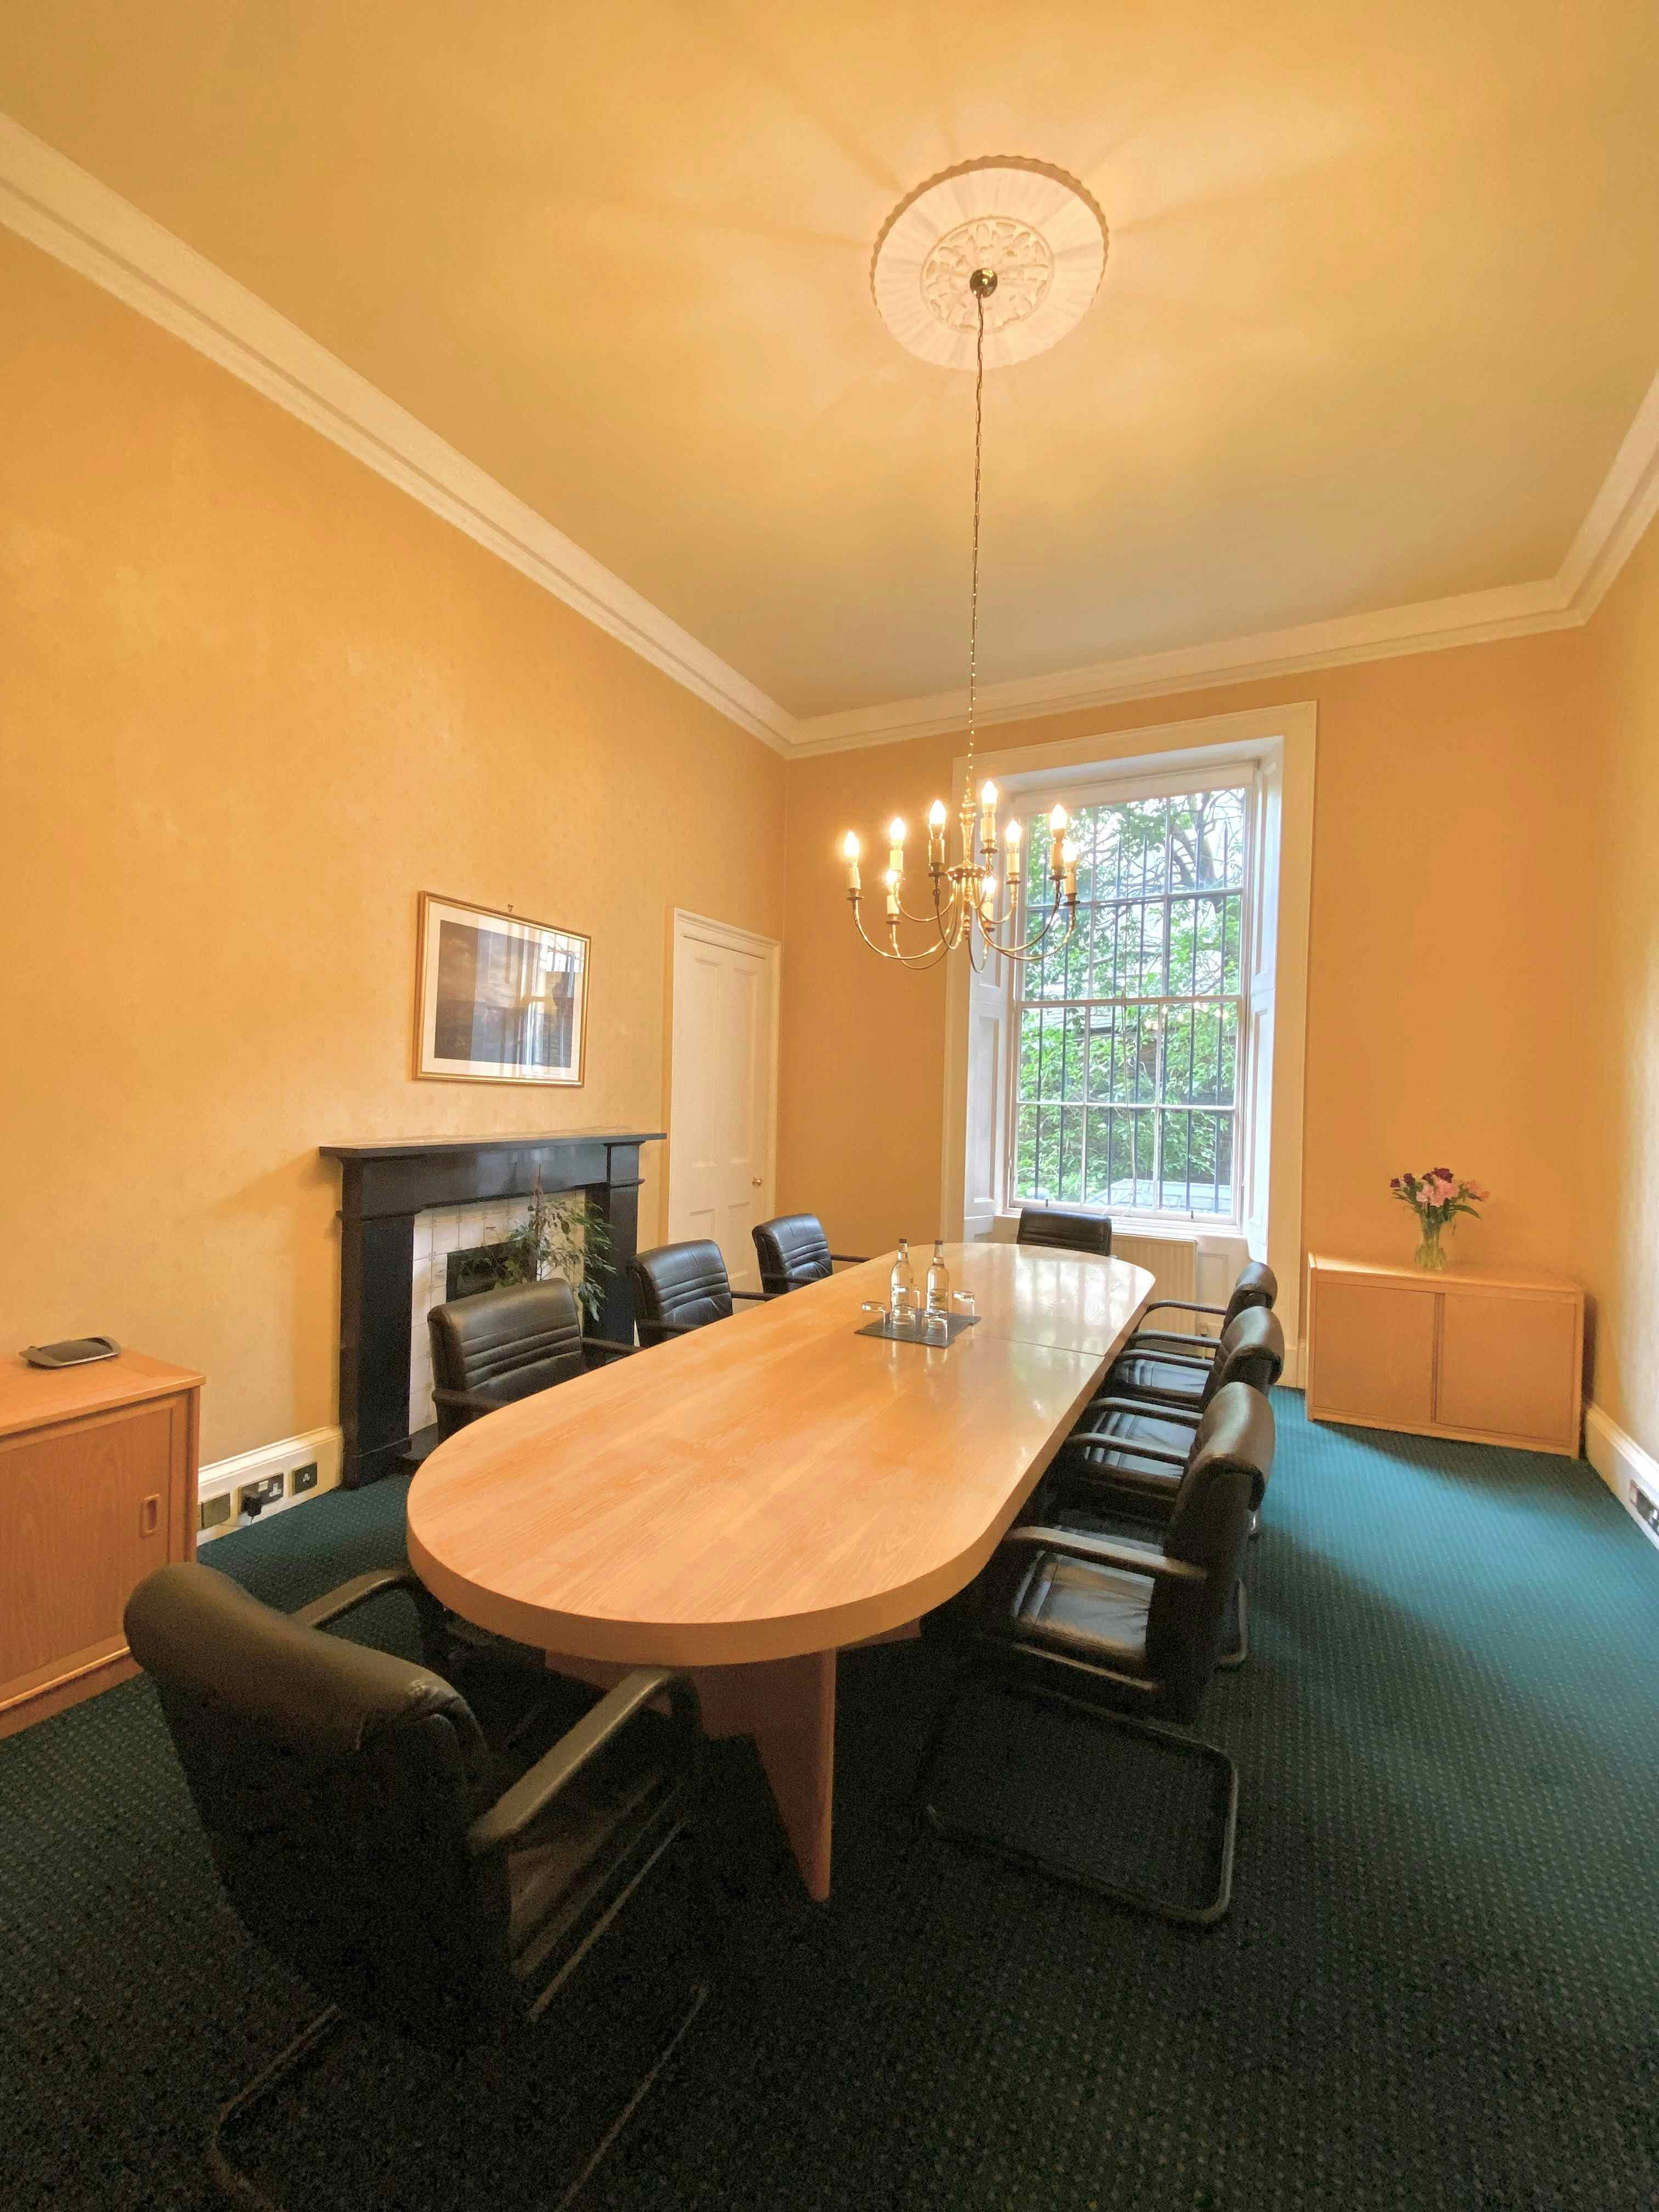 Meeting Room, Inigo Business Centres Edinburgh